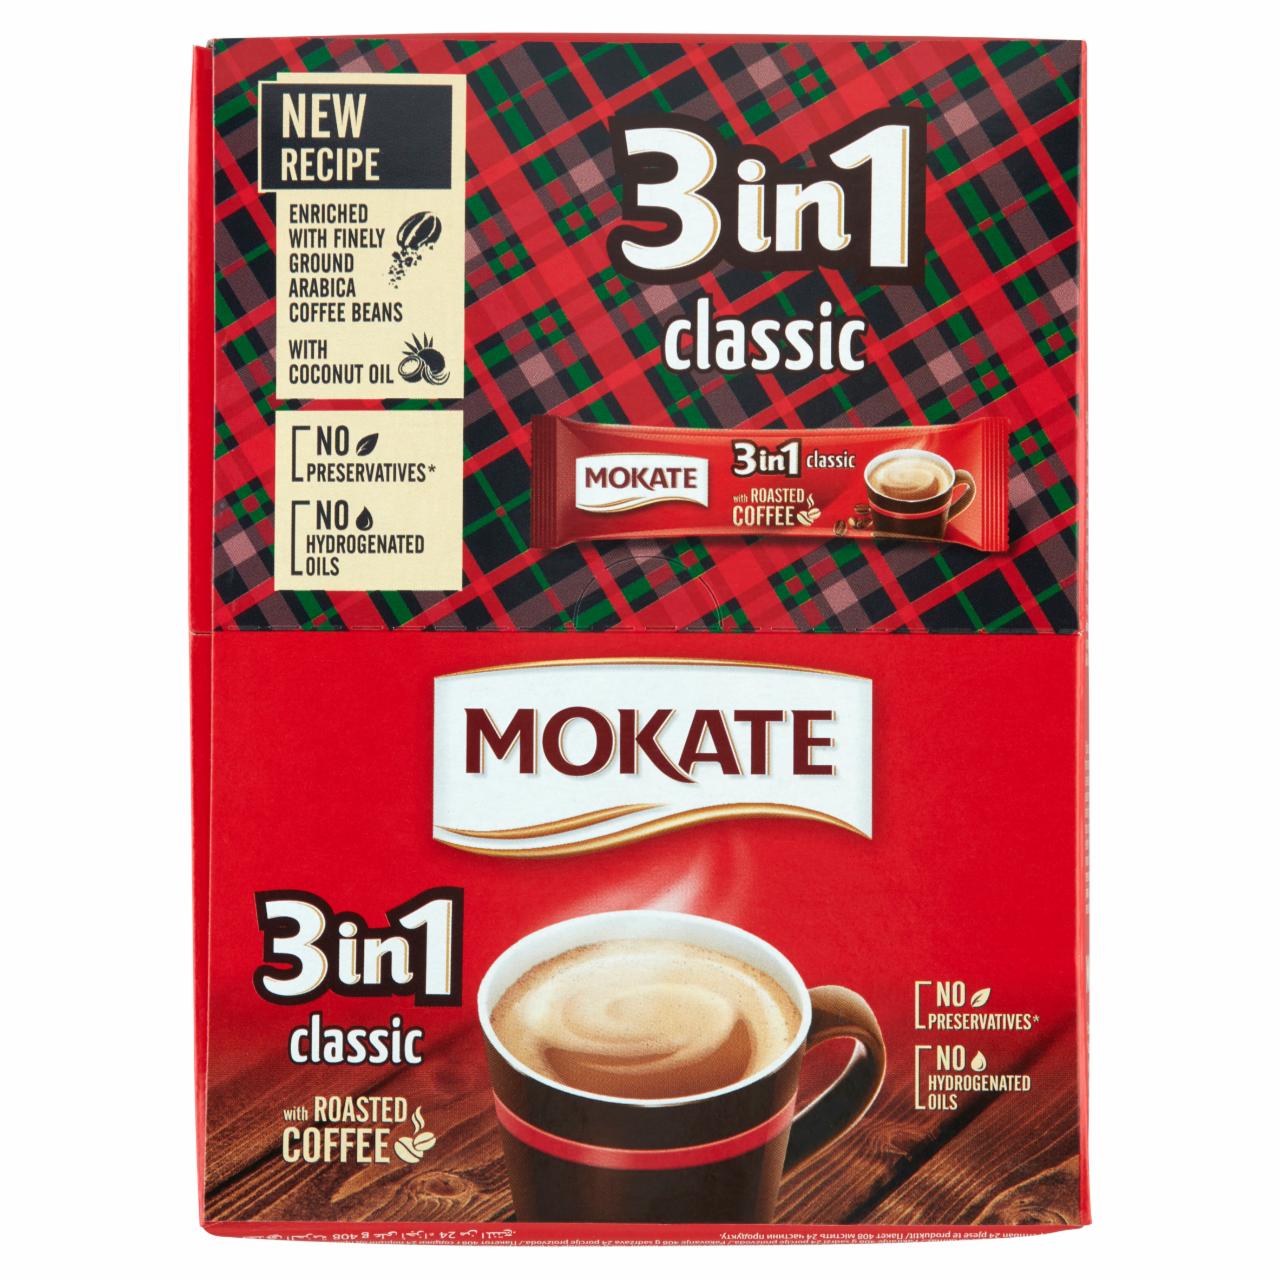 Képek - Mokate 3in1 Classic azonnal oldódó kávéspecialitás 24 x 17 g (408 g)